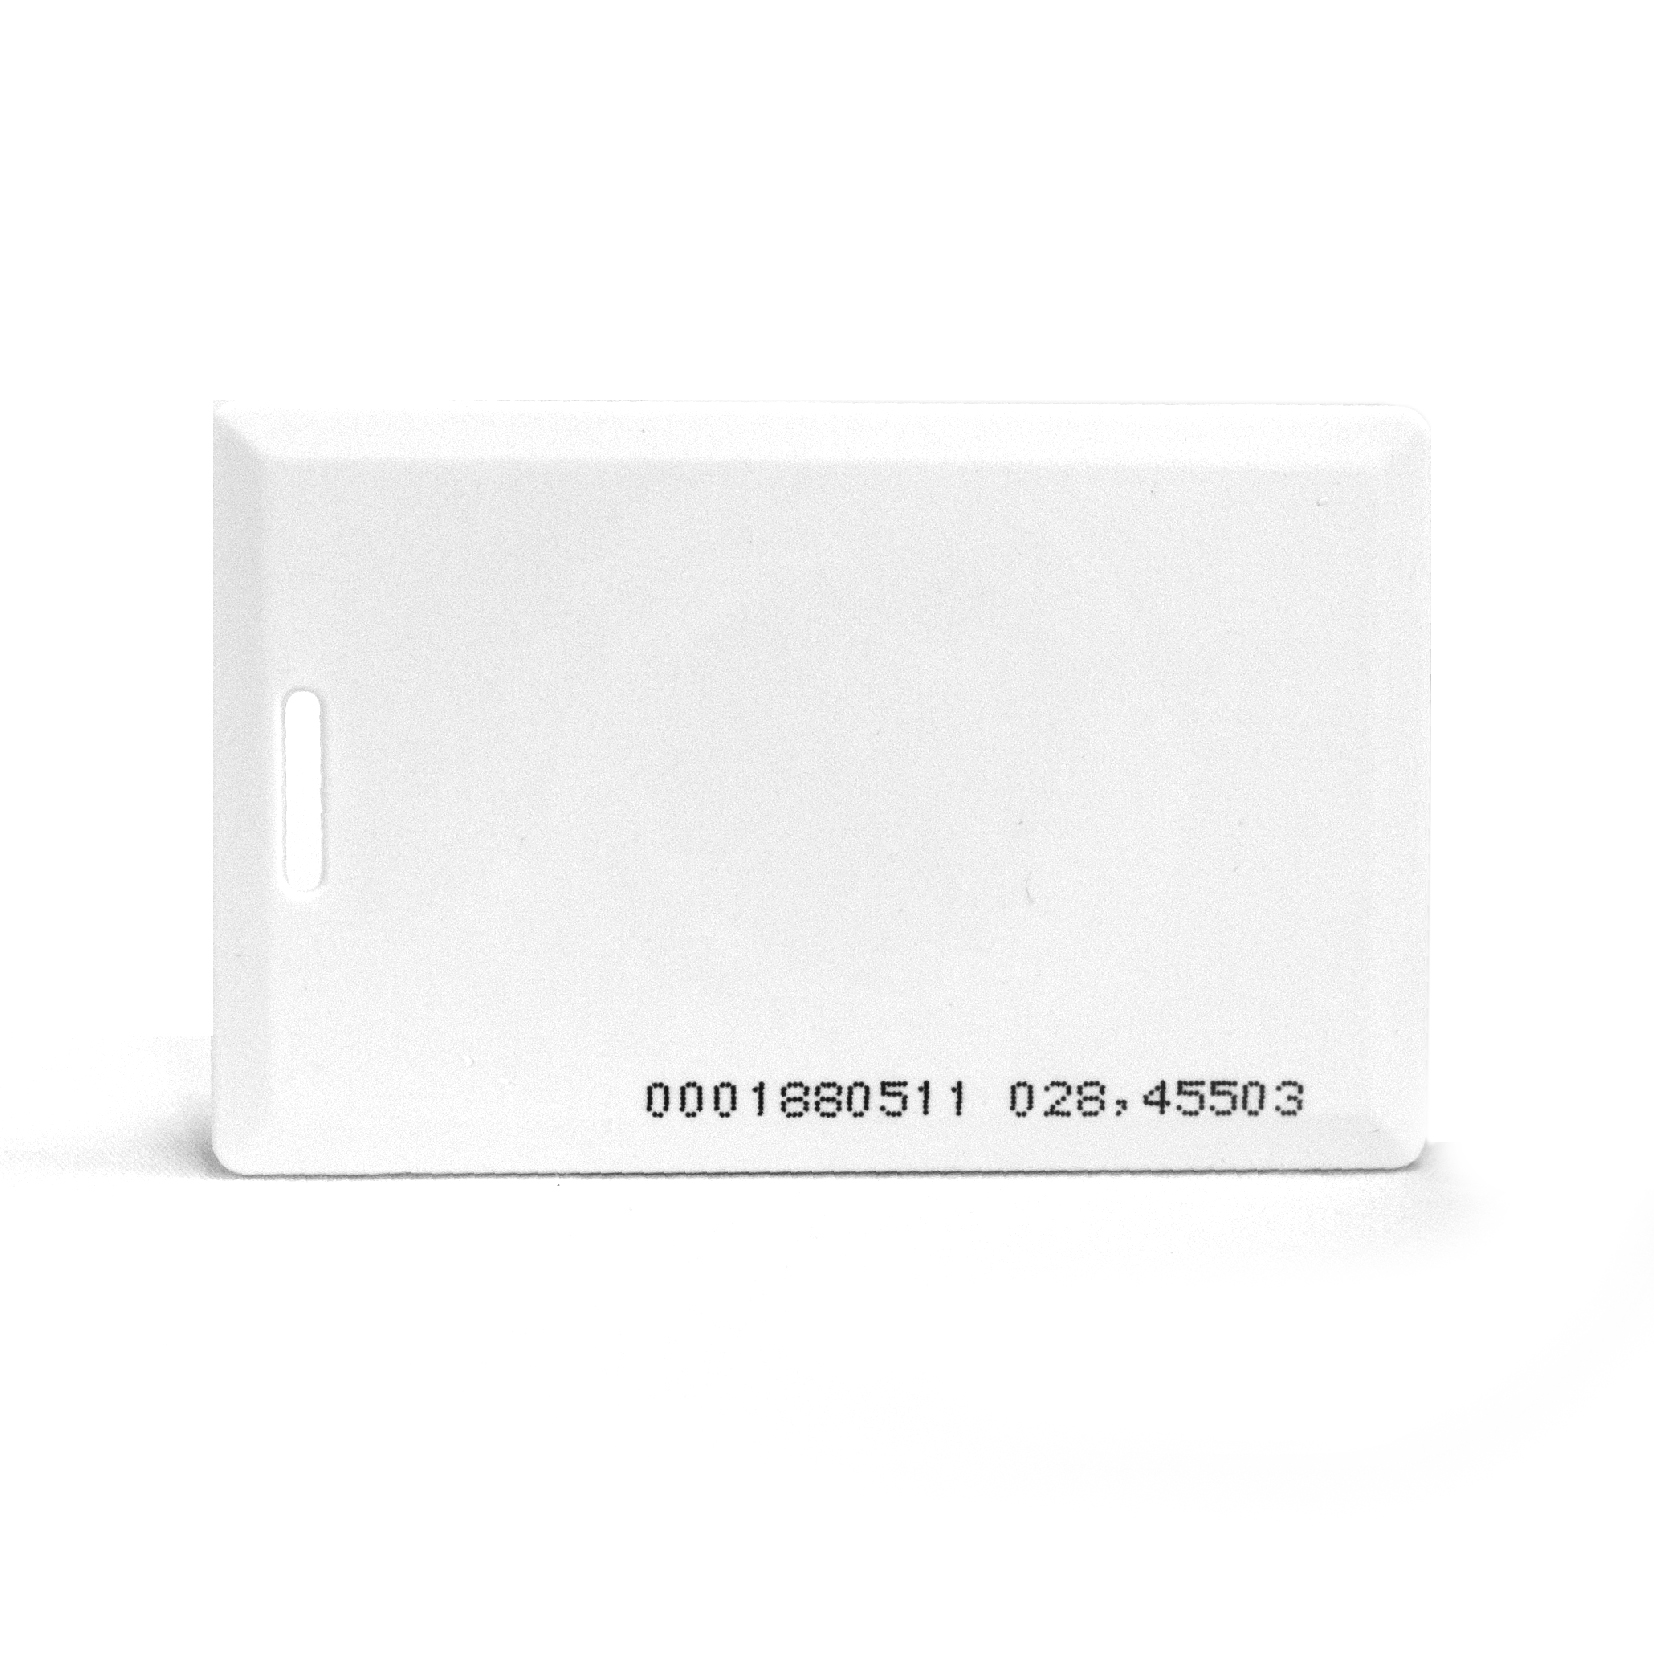 Набор пропускных карточек для считывателей с кодом Em-marine (10 штук) для бейджа и карточек